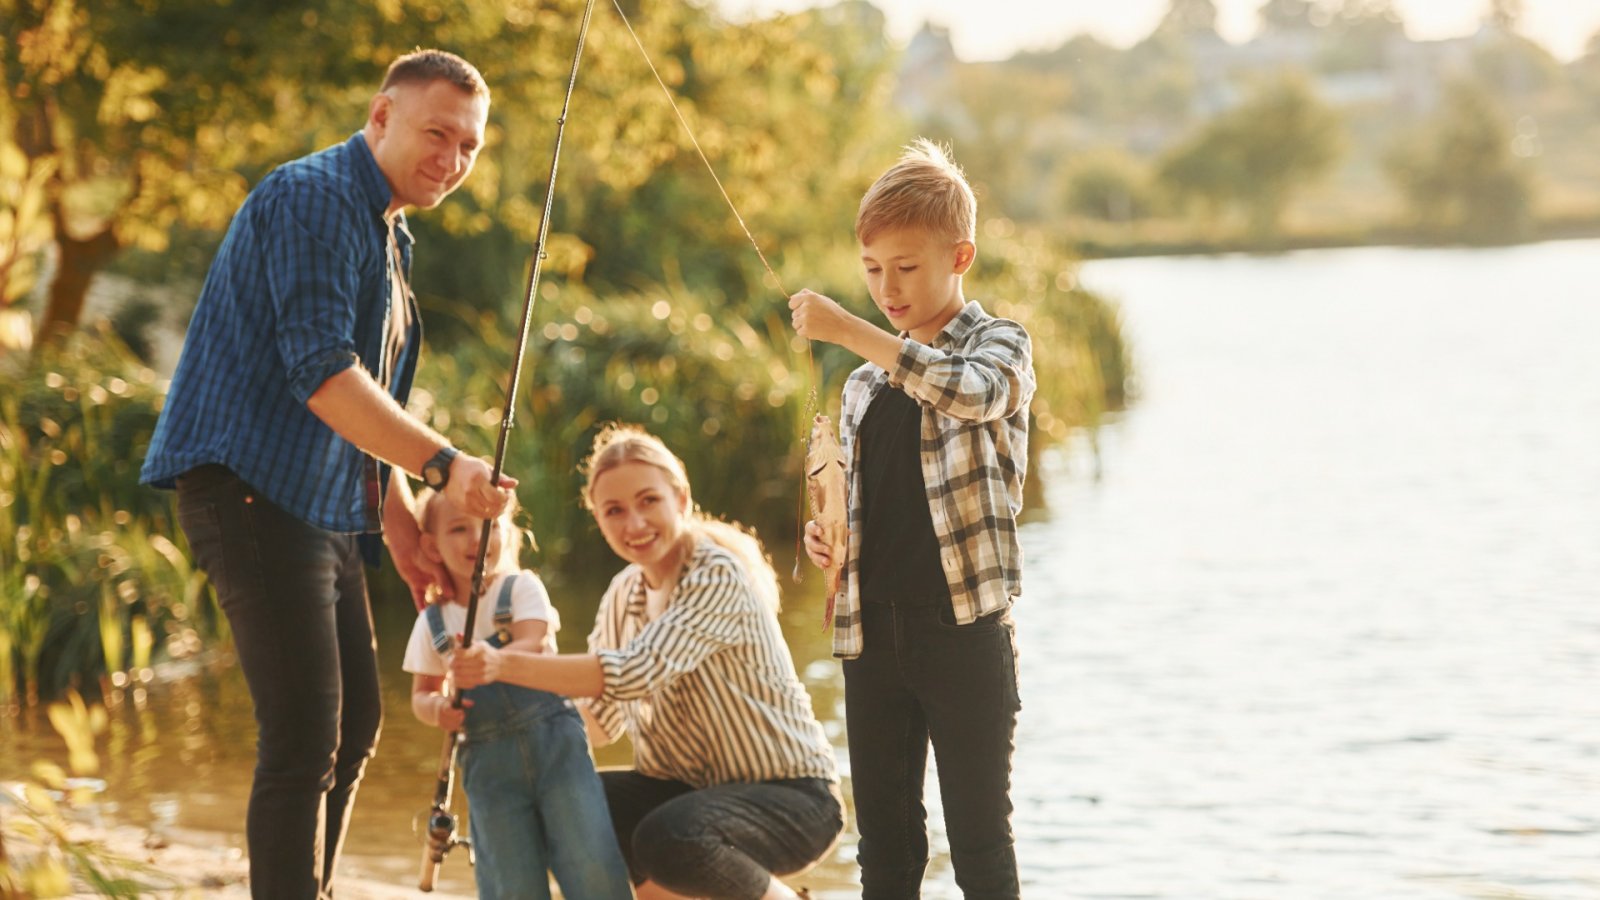 思い出作り: 自然の中で家族で楽しめる楽しい釣り旅行